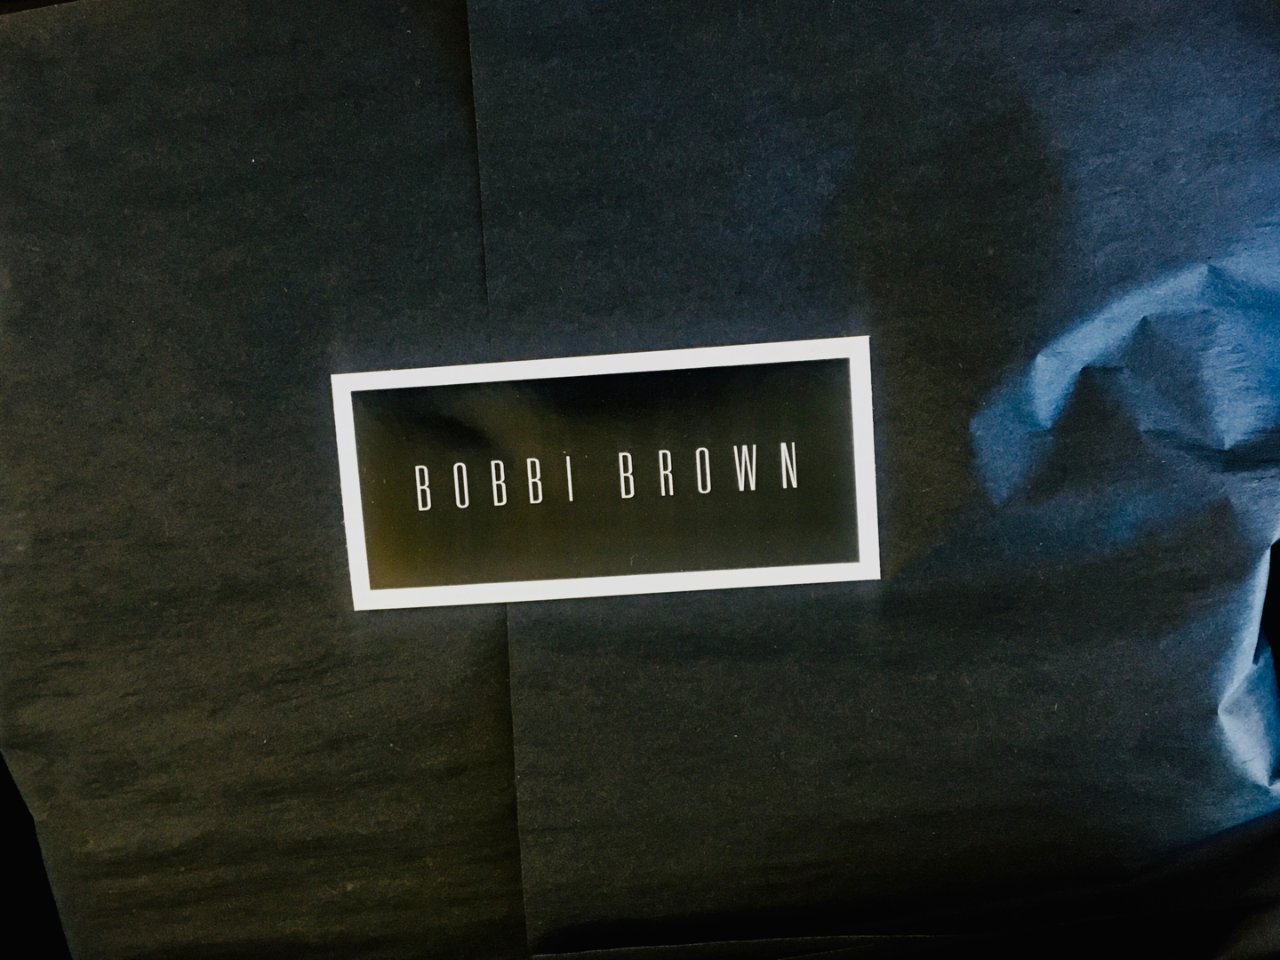 Bobbi Brown 芭比·波朗,我抢到的神deal,北美双十一,我抢到了断货王